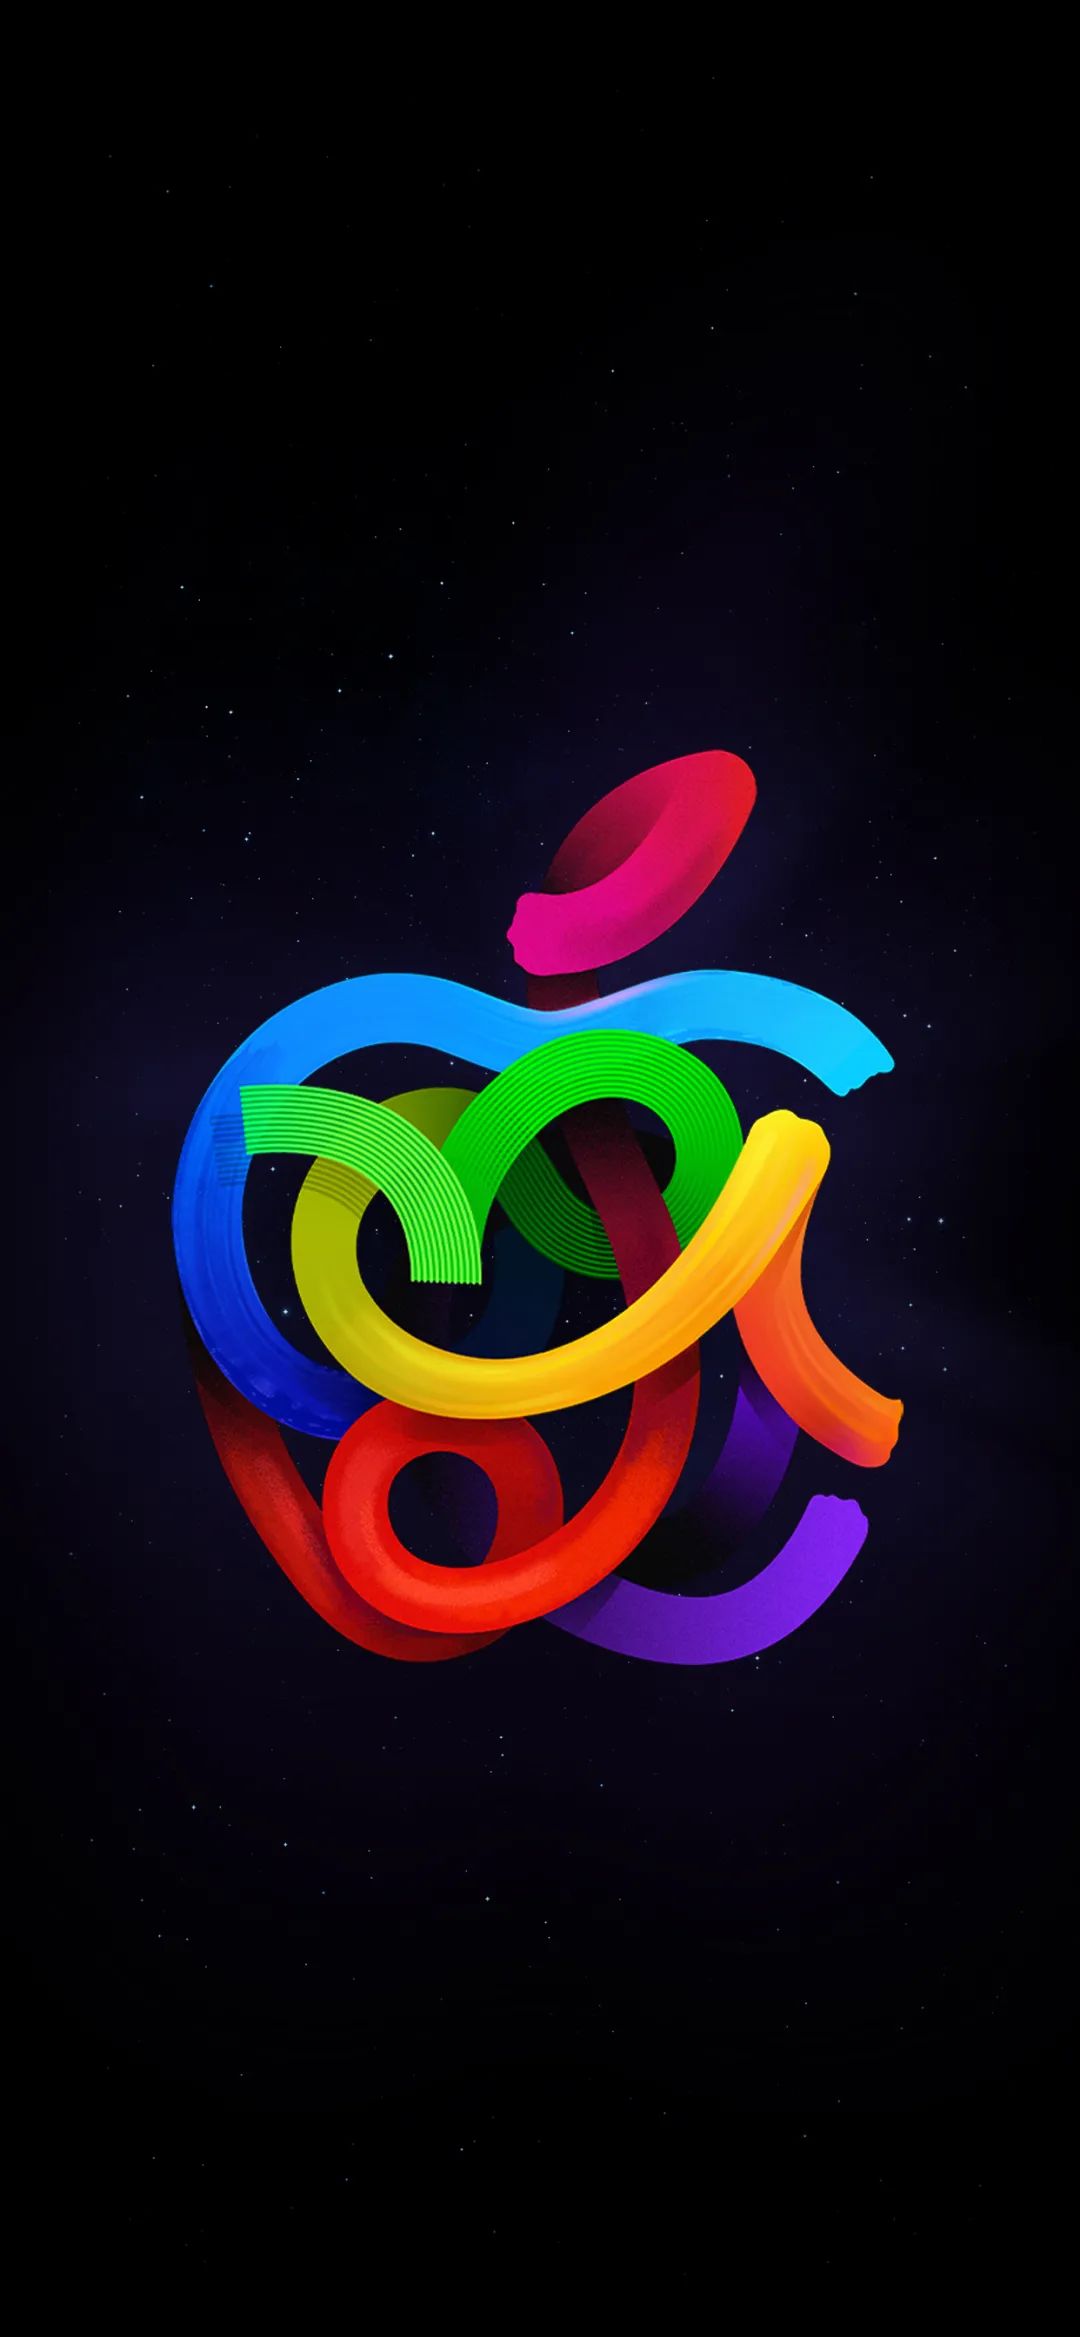 分别对应ipad/iphone/imac 壁纸除了创意的 apple logo创意图形外